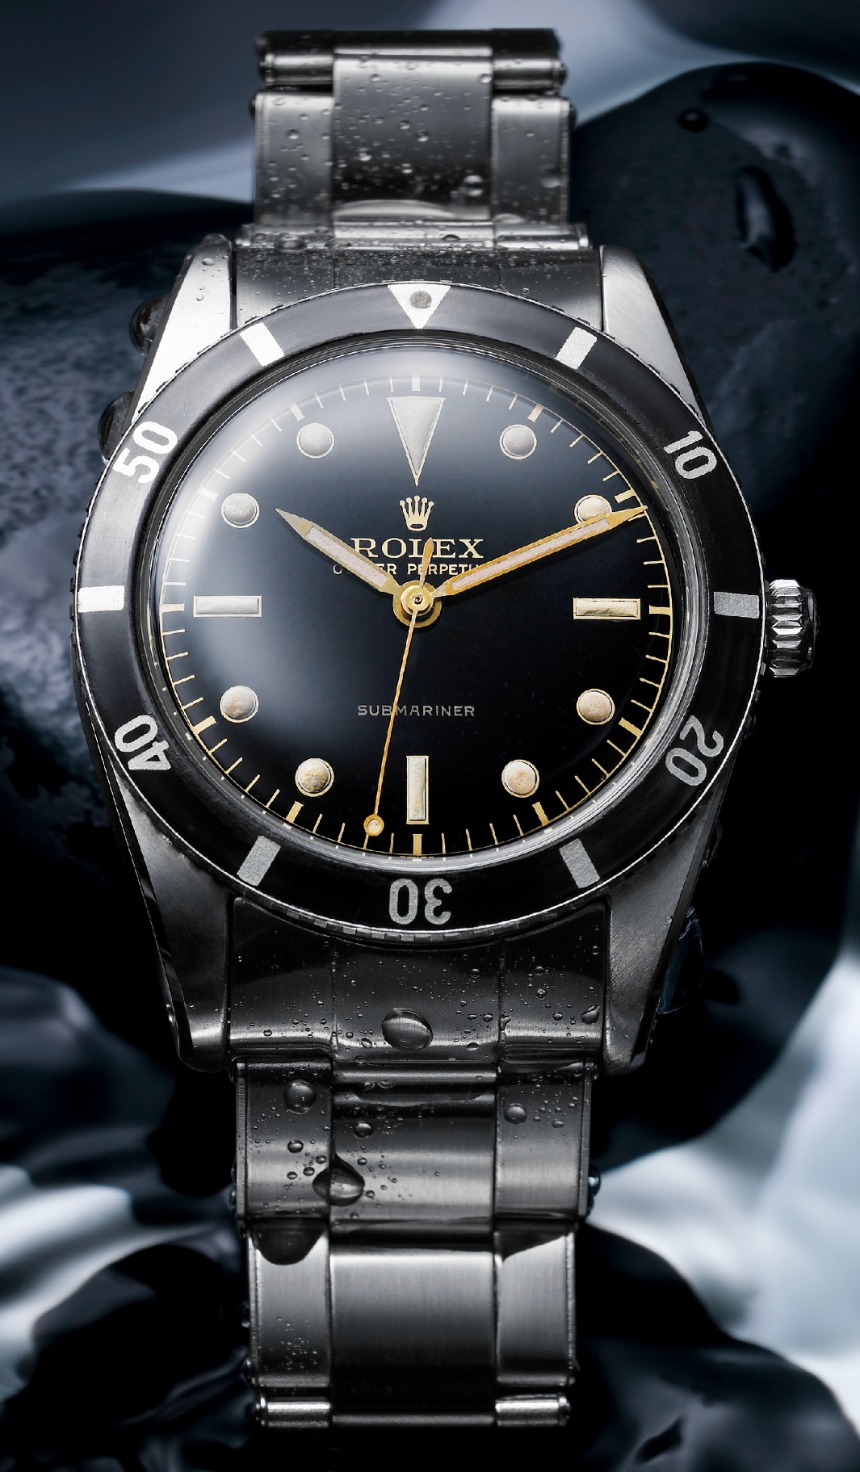 The First Rolex Submariner Watch 